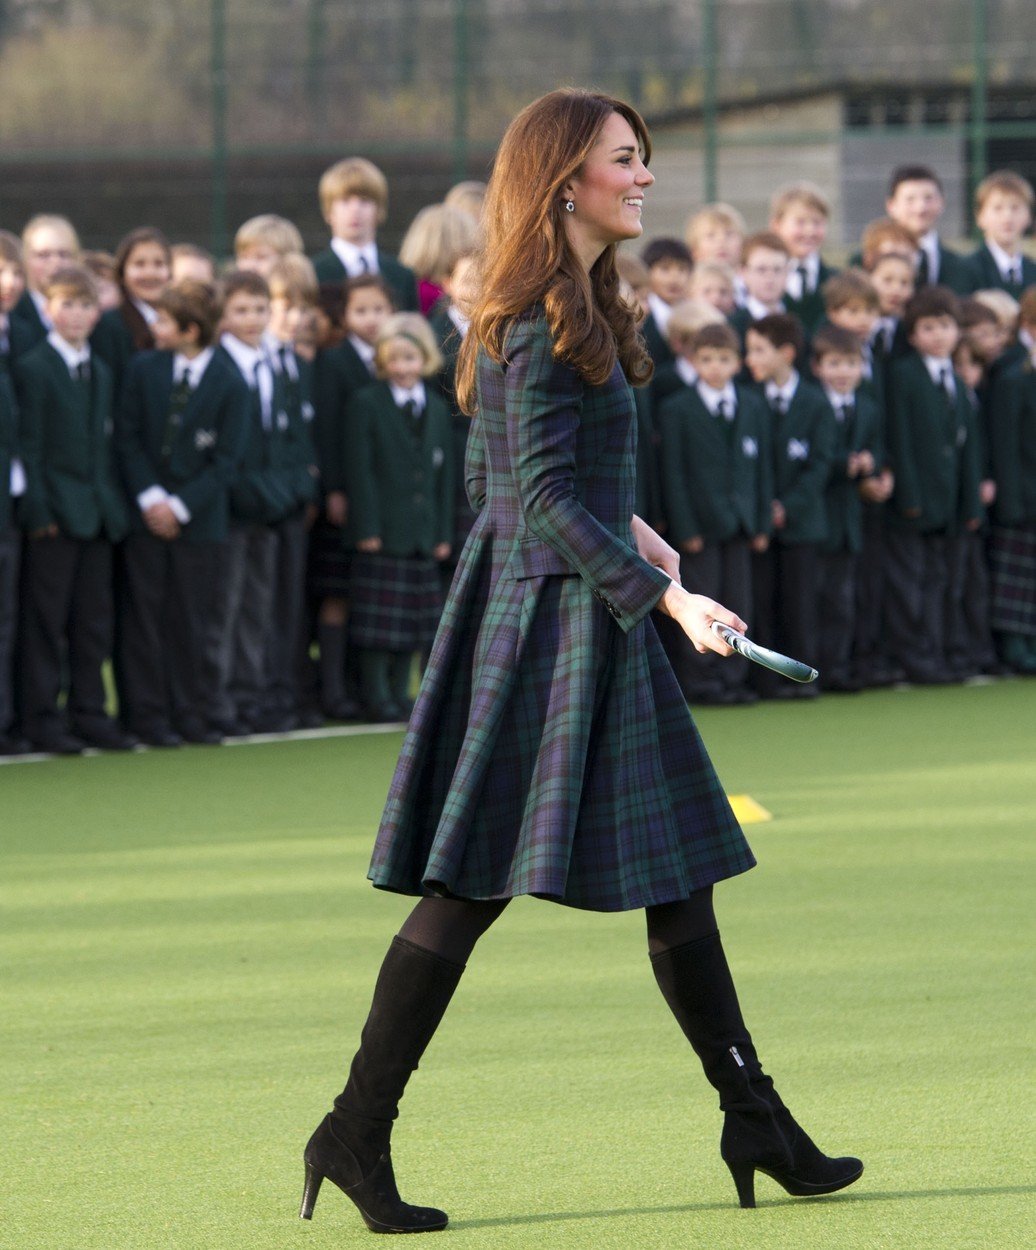 Vévodkyně Kate v kabátu v roce 2012.